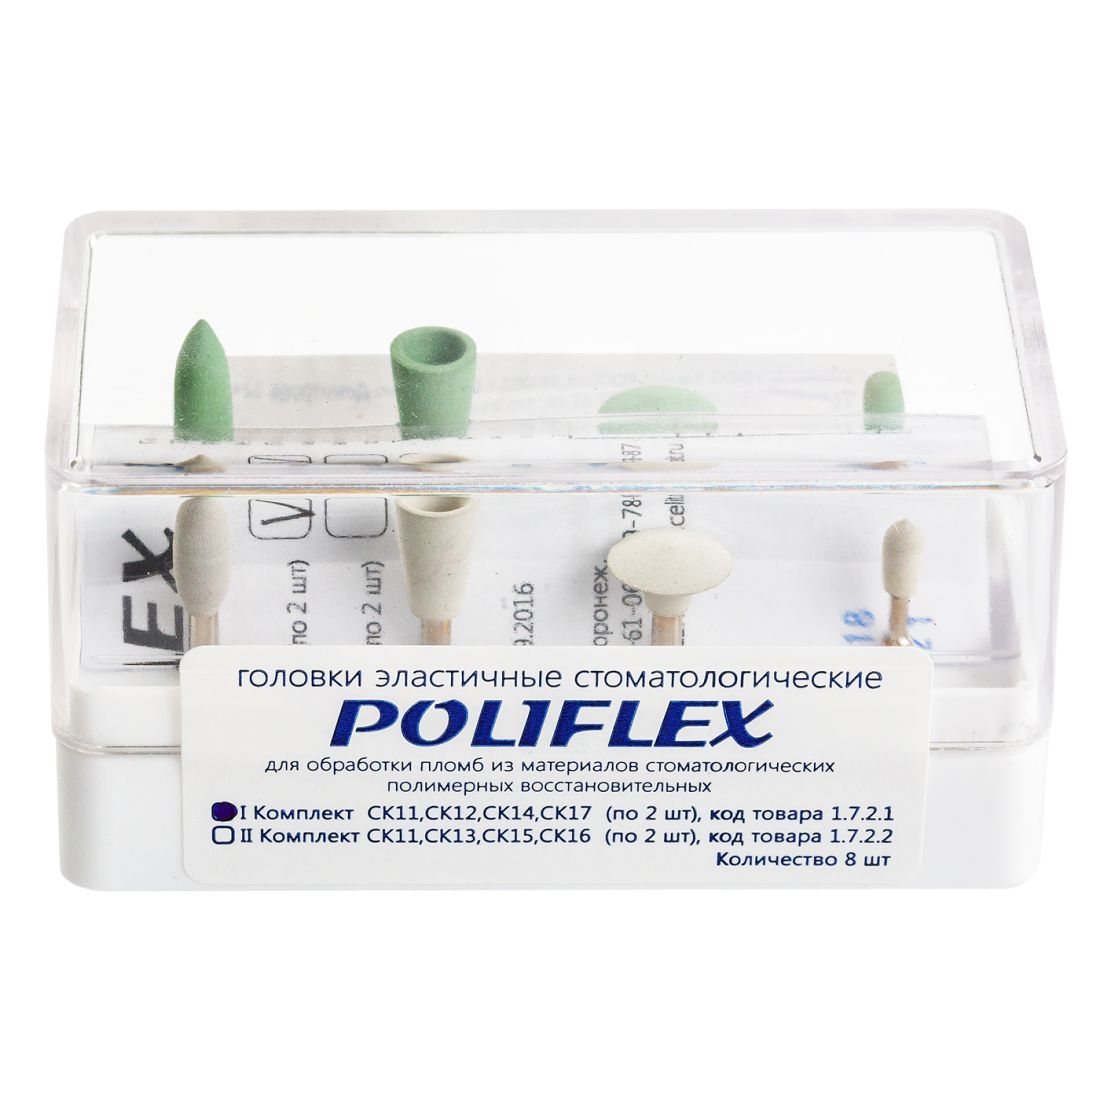 Poliflex - головки Полифлекс для обработки пломб набор №1 (8шт)